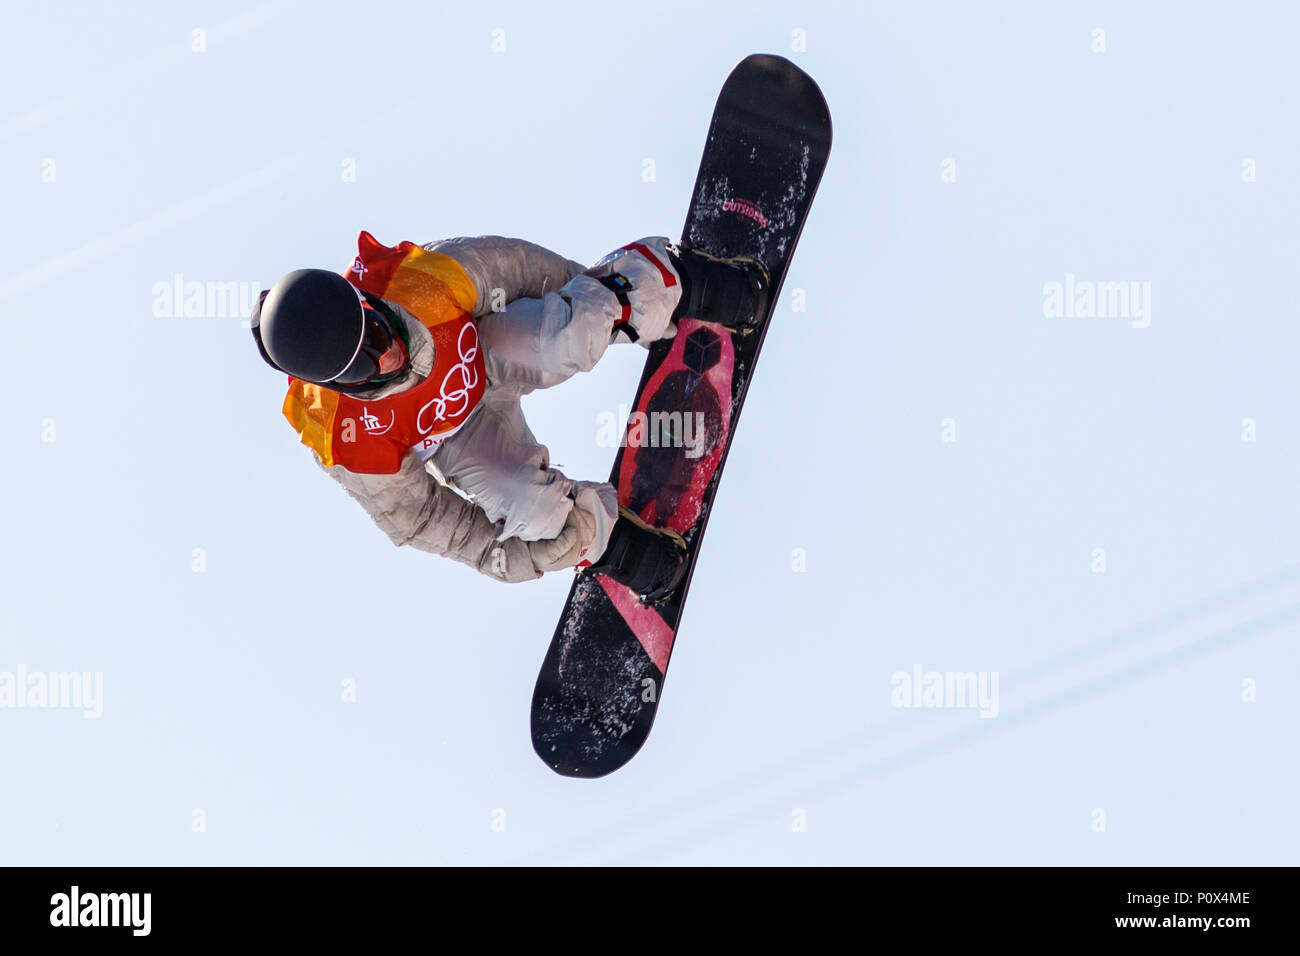 Chase Josey (USA) konkurrieren in der Männer Snowboard Halfpipe Qualifikation bei den Olympischen Winterspielen PyeongChang 2018 Stockfoto